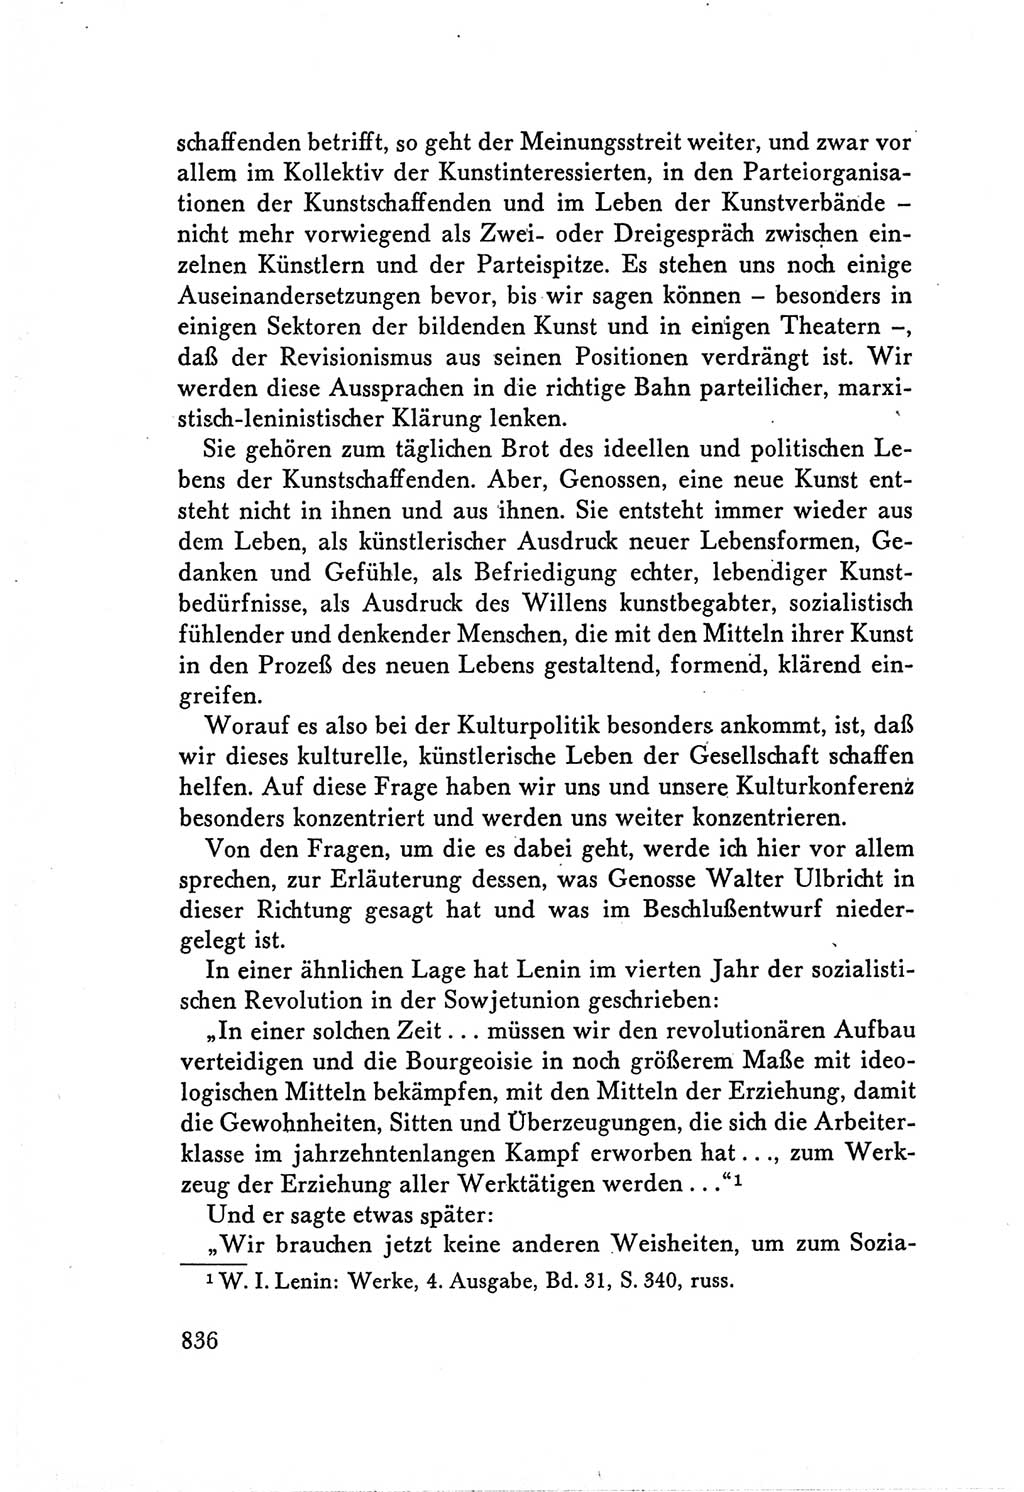 Protokoll der Verhandlungen des Ⅴ. Parteitages der Sozialistischen Einheitspartei Deutschlands (SED) [Deutsche Demokratische Republik (DDR)] 1958, Seite 836